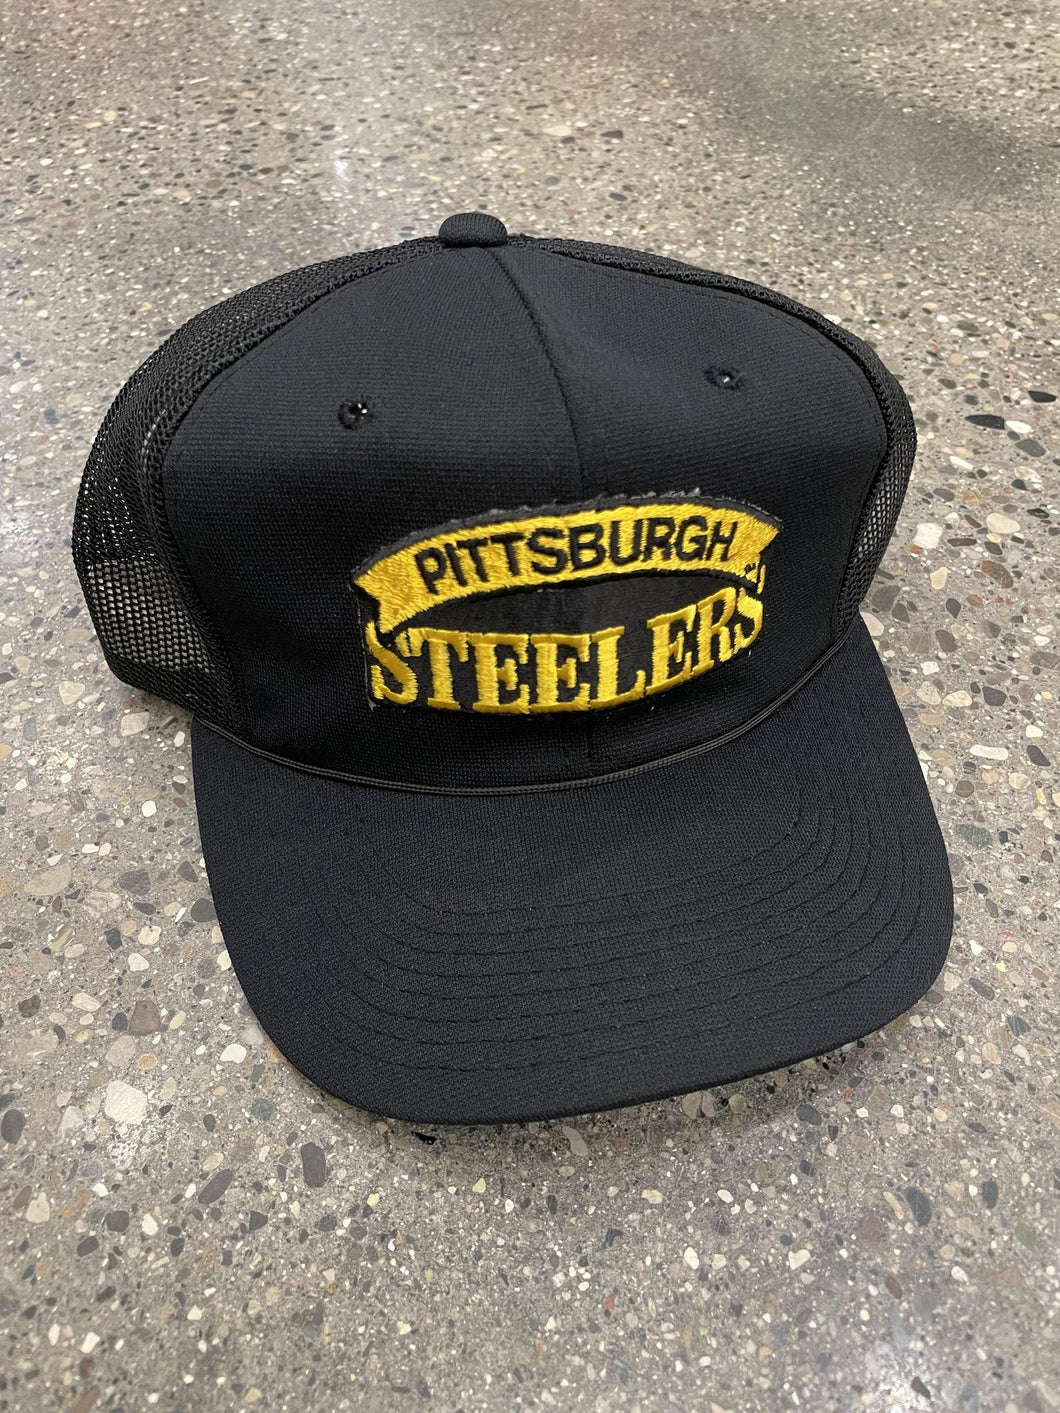 Pittsburgh Steelers Vintage Trucker Hat ABC Vintage 